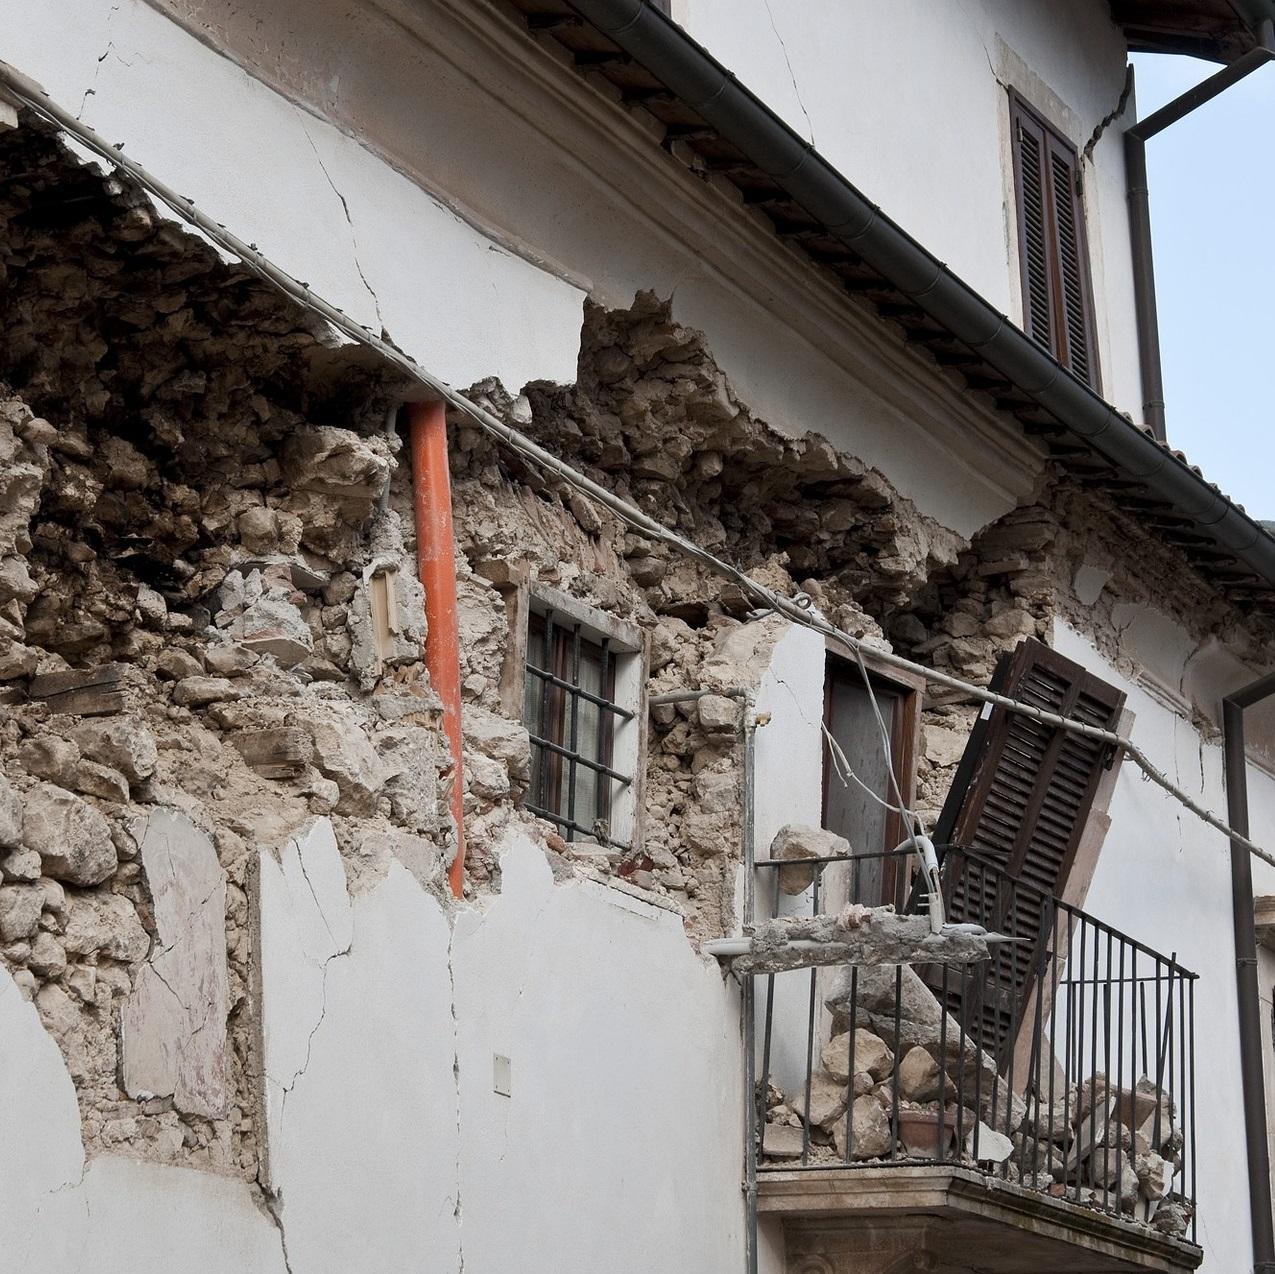 SISMA ITALIA CENTRALE - Aggiornata la guida sugli incentivi per la ricostruzione